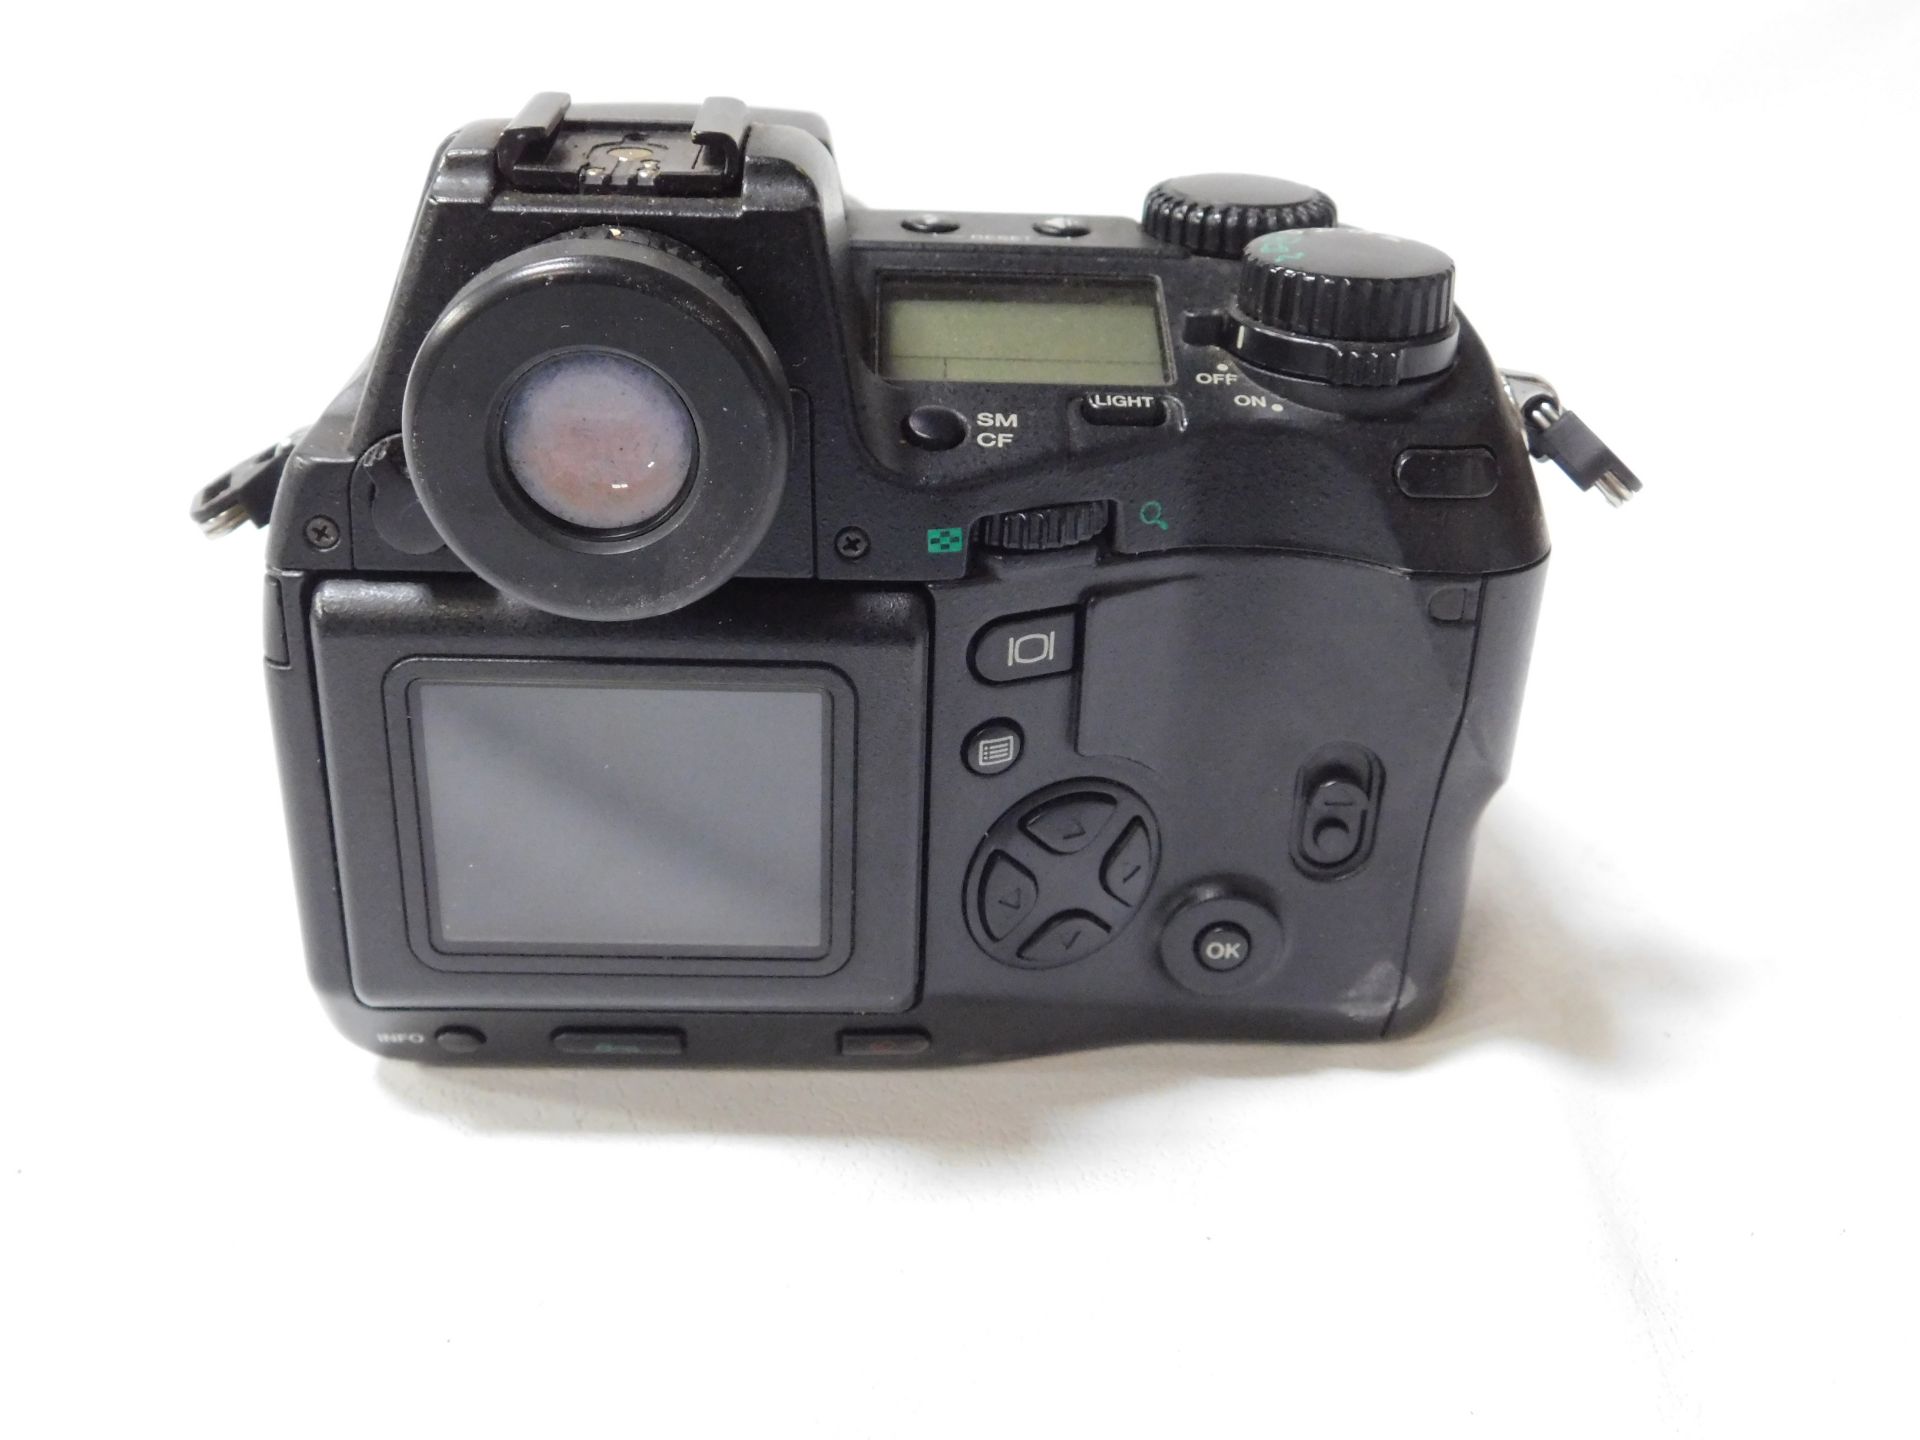 Olympus Camedia E-20P 5.0 Megapixel Digital Camera, Serial Number 203018908 with AF Zoom 9-36mm Lens - Bild 3 aus 4